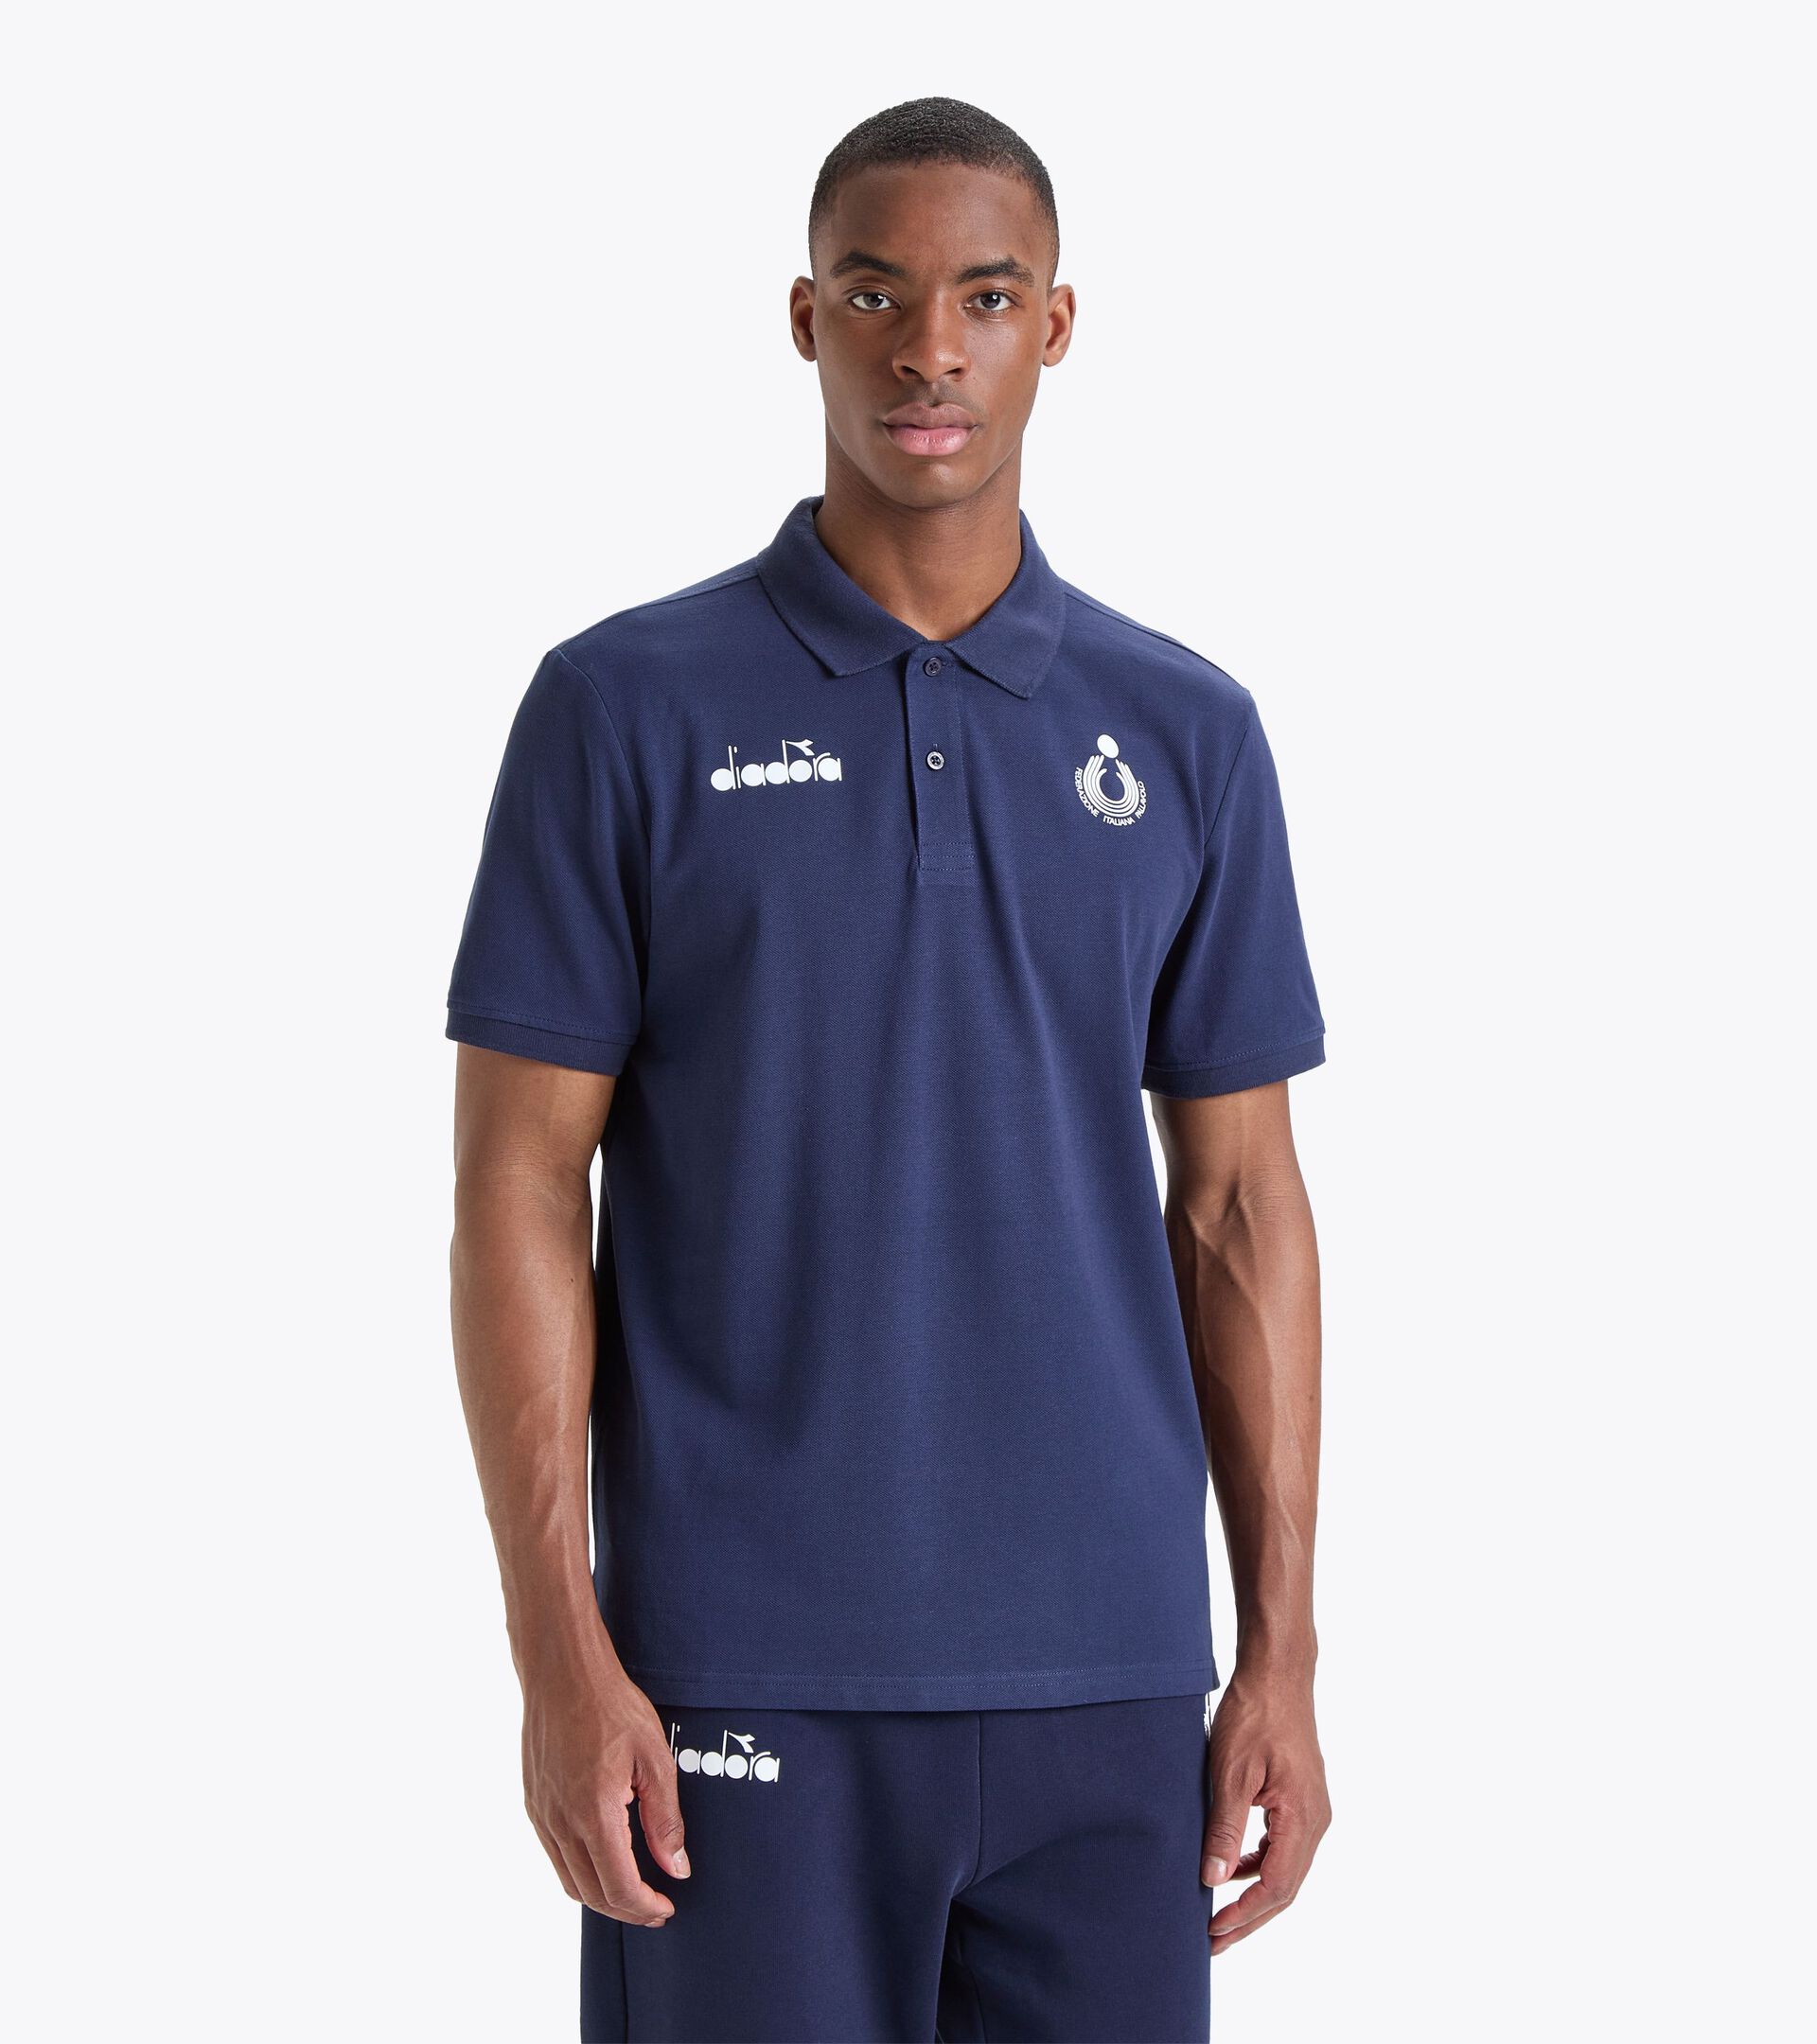 POLO RAPPRESENTANZA BV23 ITALIA Polo shirt - Italy Volleyball - Diadora Store US